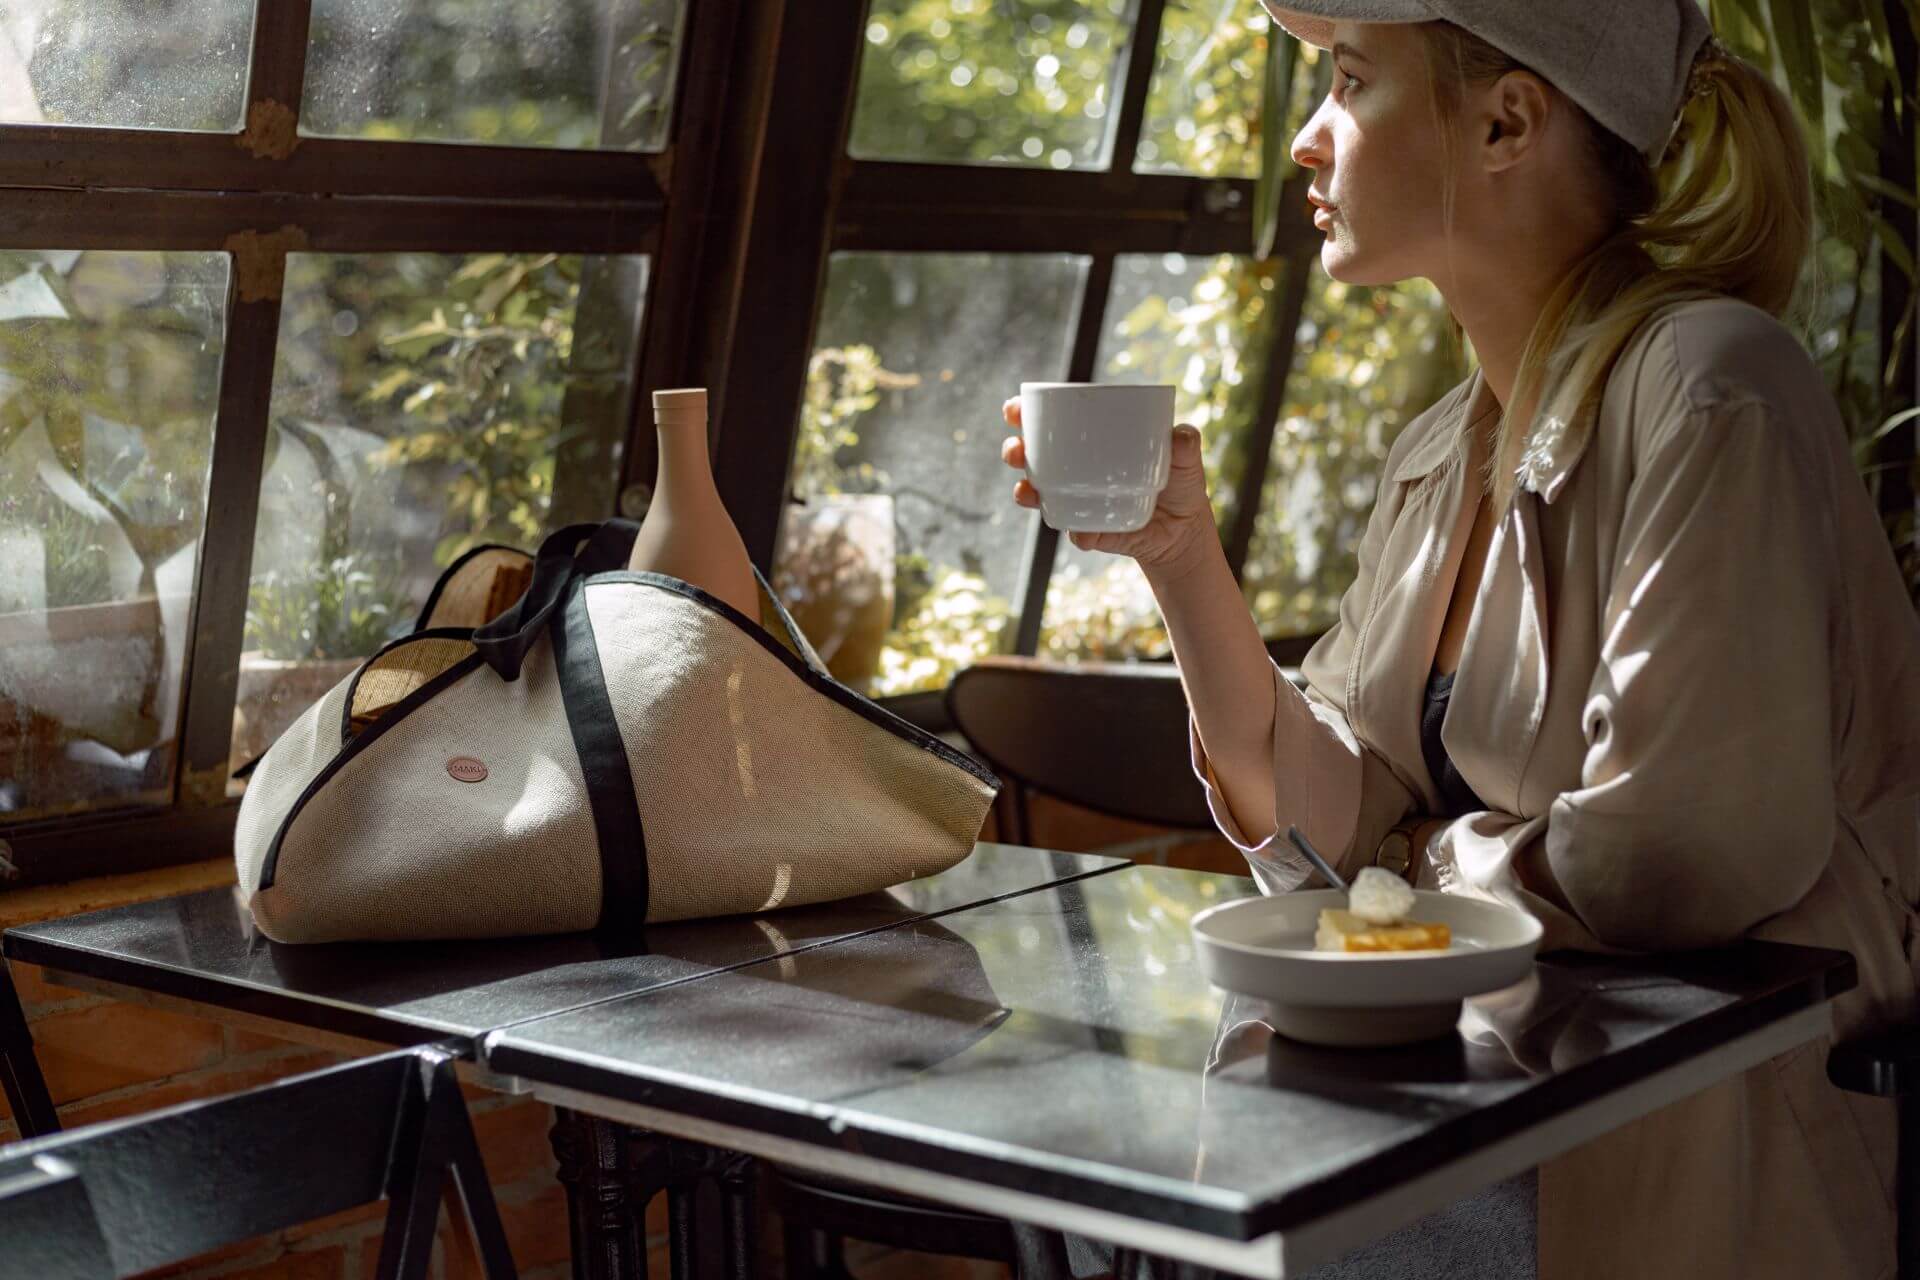 kobieta siedząca przy stole, pijąca kawę z kubka porcelanowego. Na stole leży lniana torba shopperka.